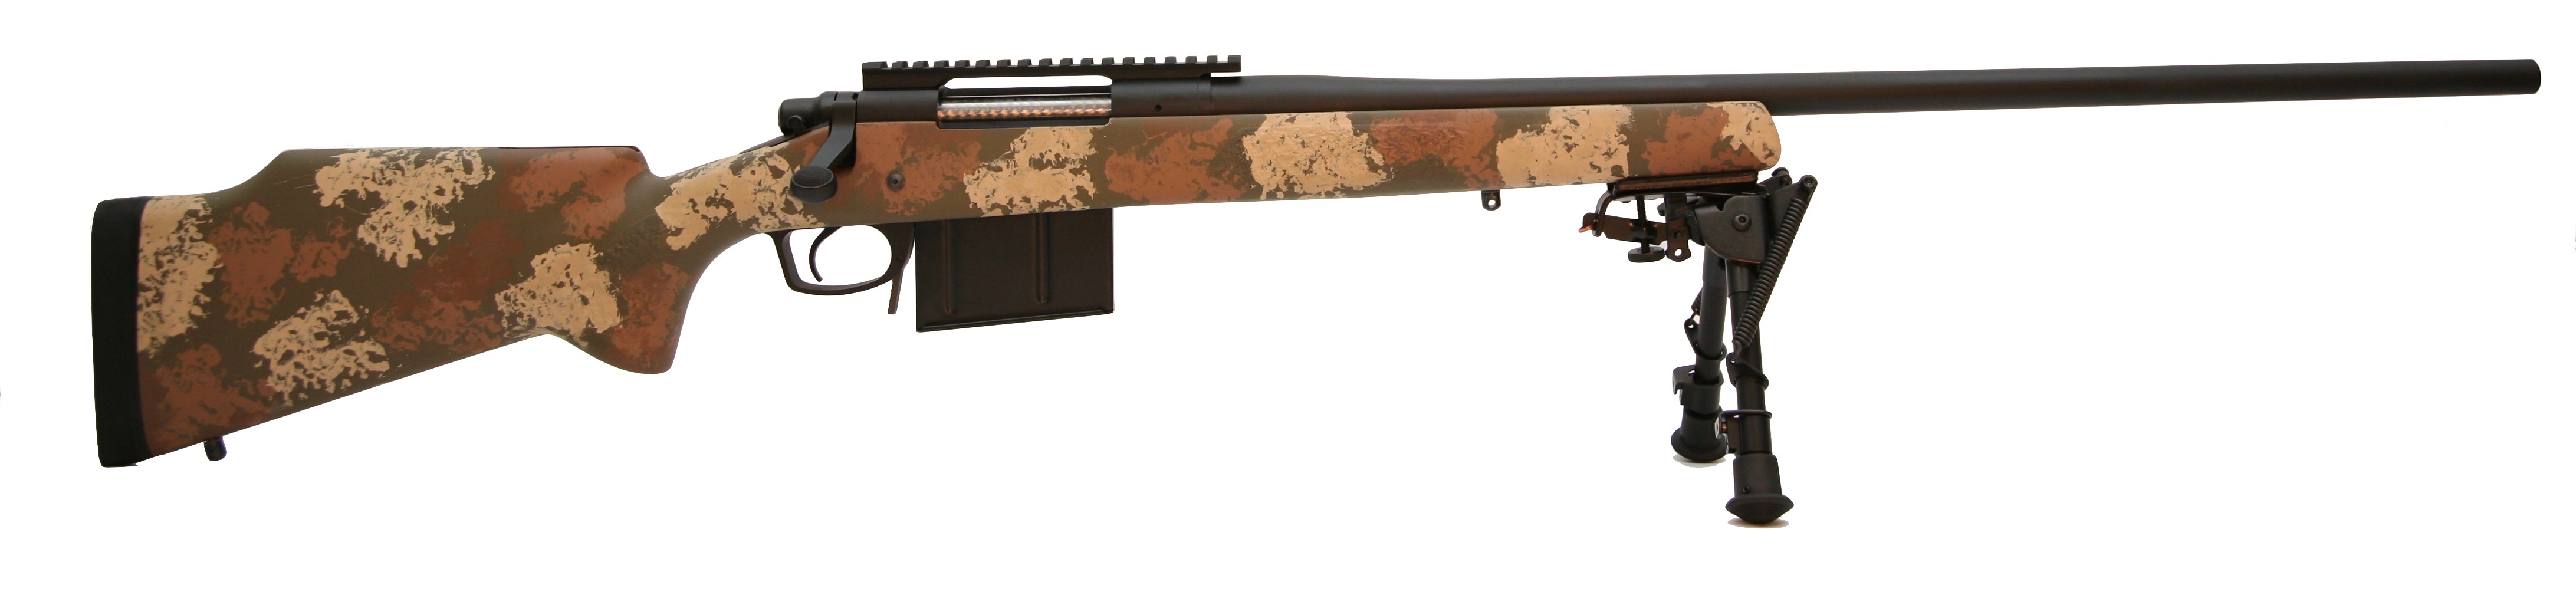 RR20990H Precision Rifle Series rifles